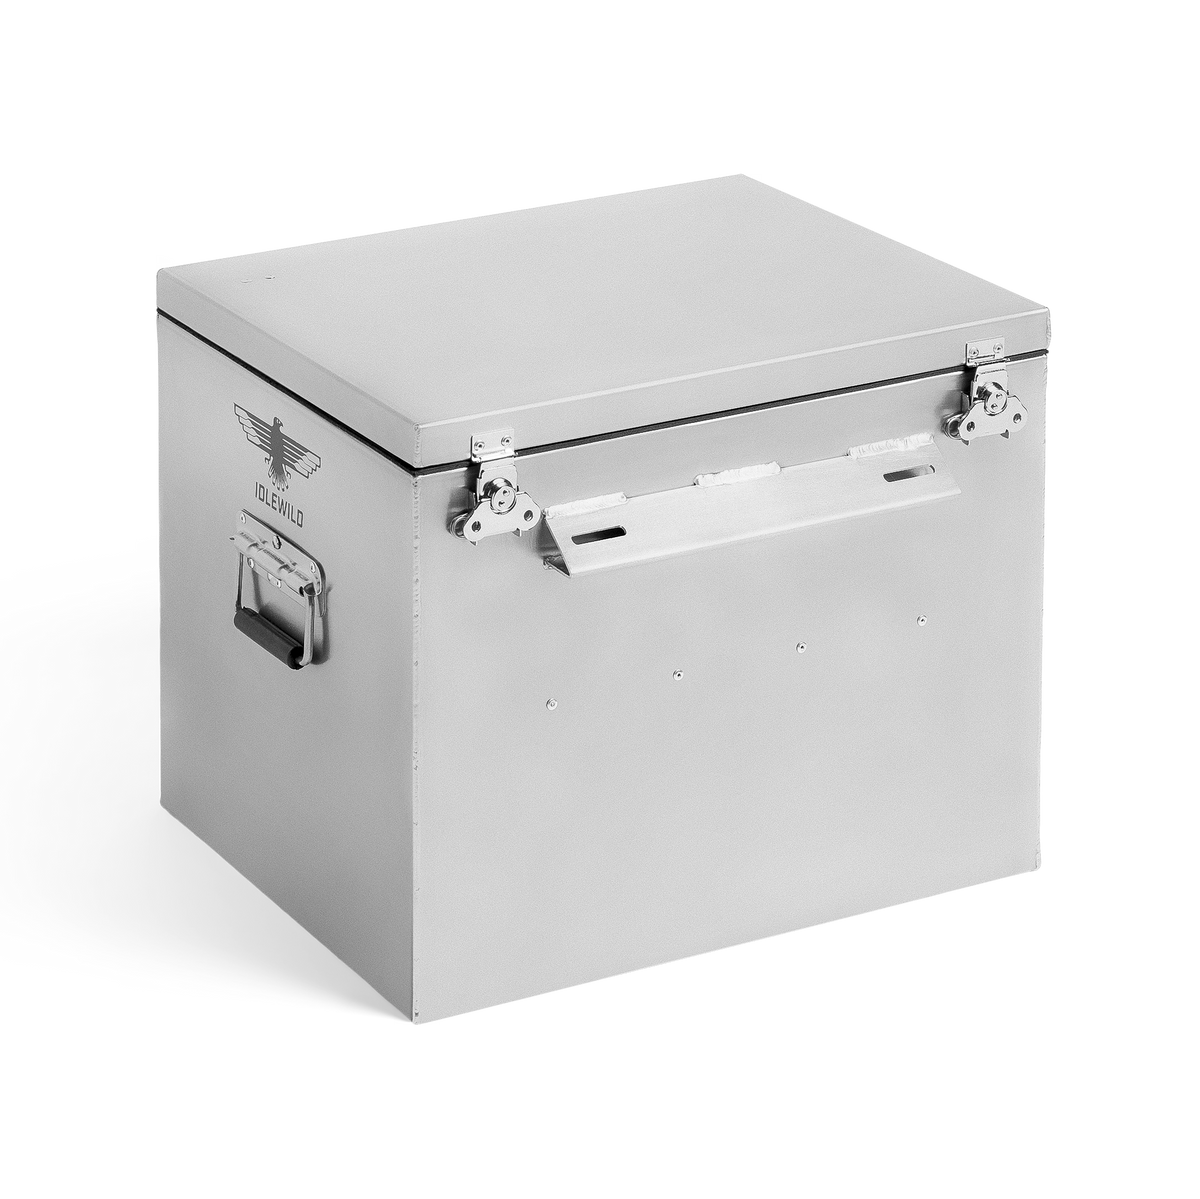 Gen 1 Dry Box- 20 – Idlewild, Limited